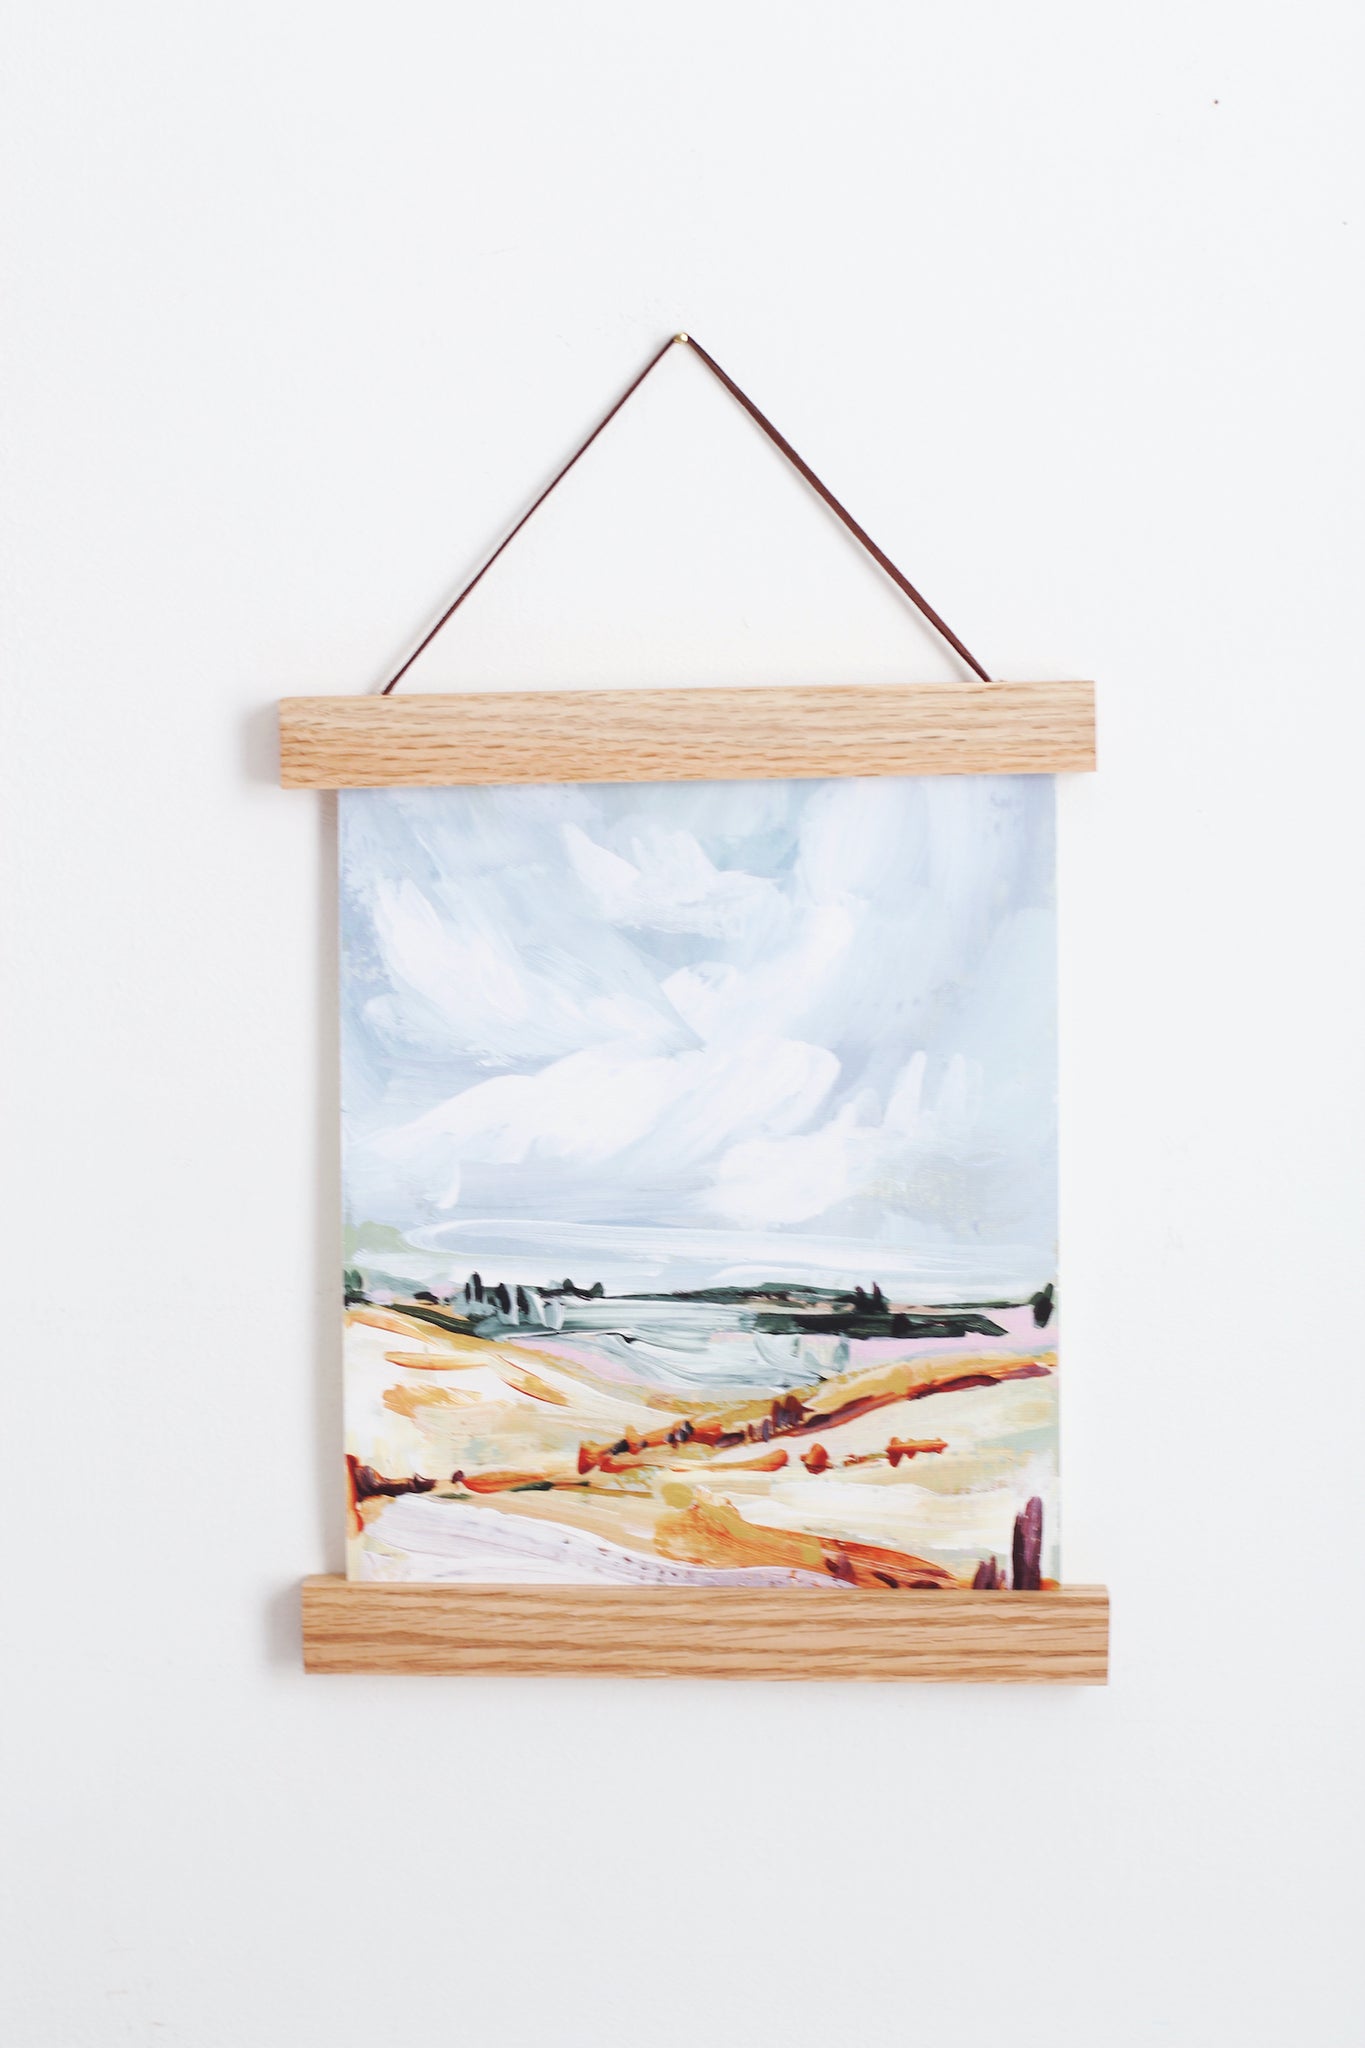 9" Magnetic Wood Poster Hanger Frame for 8x10" Prints